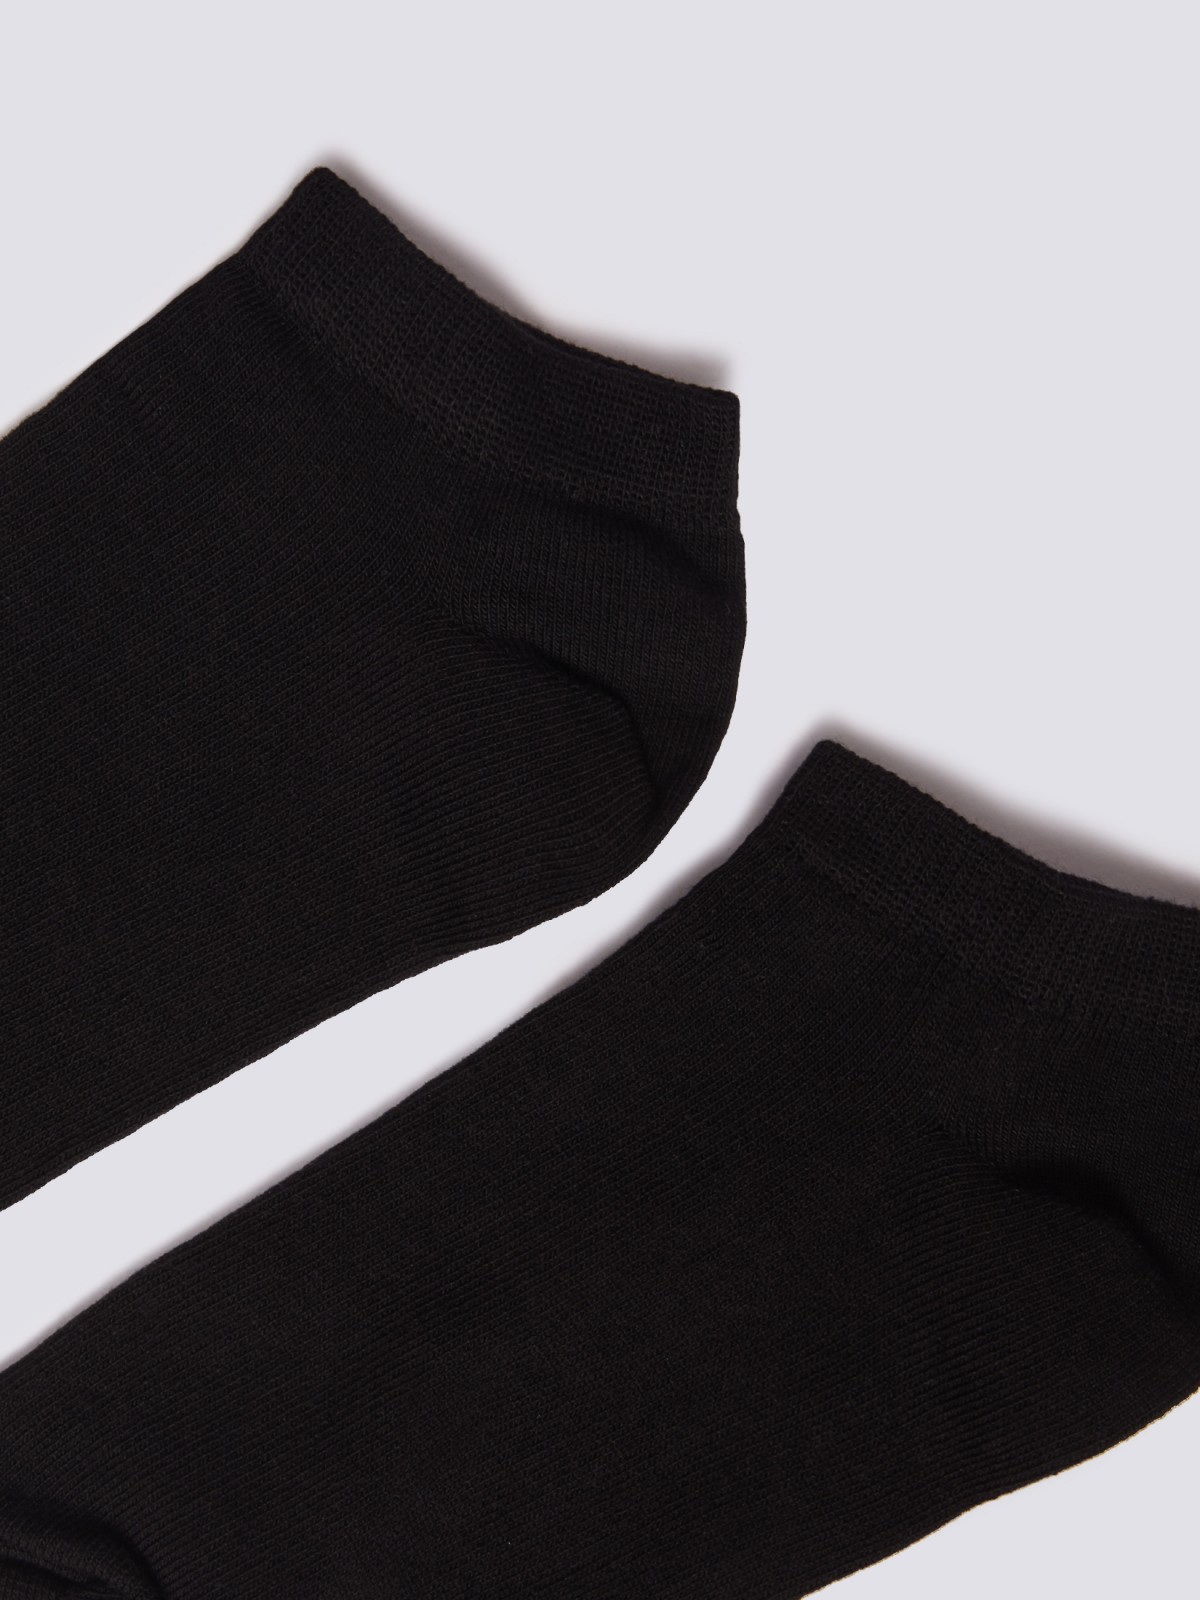 Набор коротких носков (3 пары в комплекте) zolla 01421998J025, цвет черный, размер 25-27 - фото 3